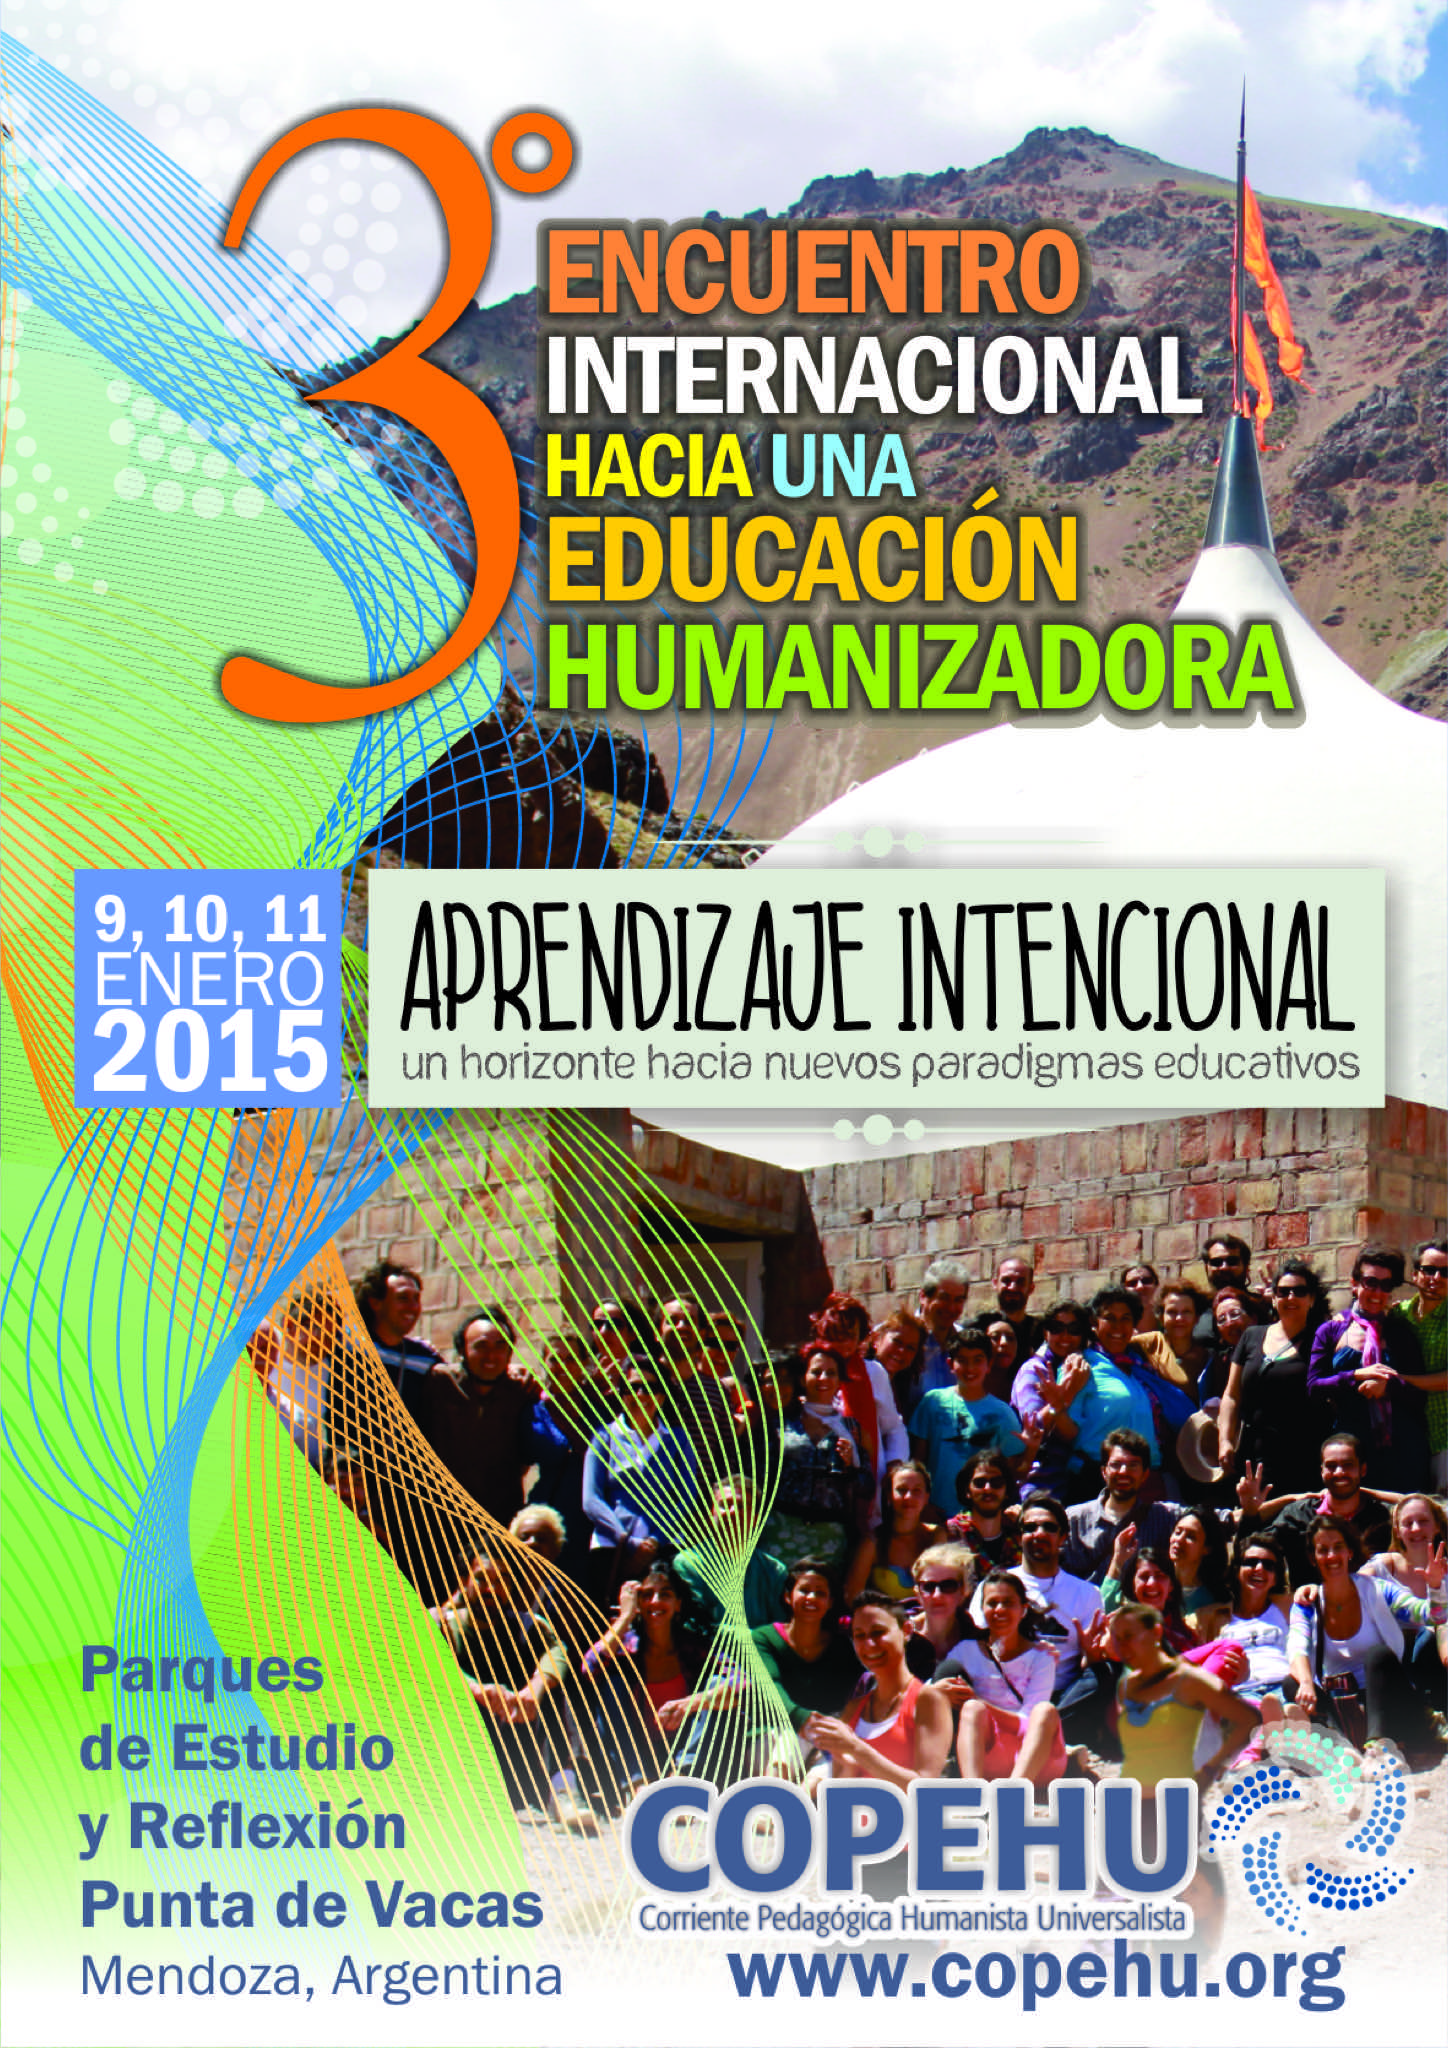 Encuentro Internacional “Hacia una Educación Humanizadora” en la Cordillera de los Andes